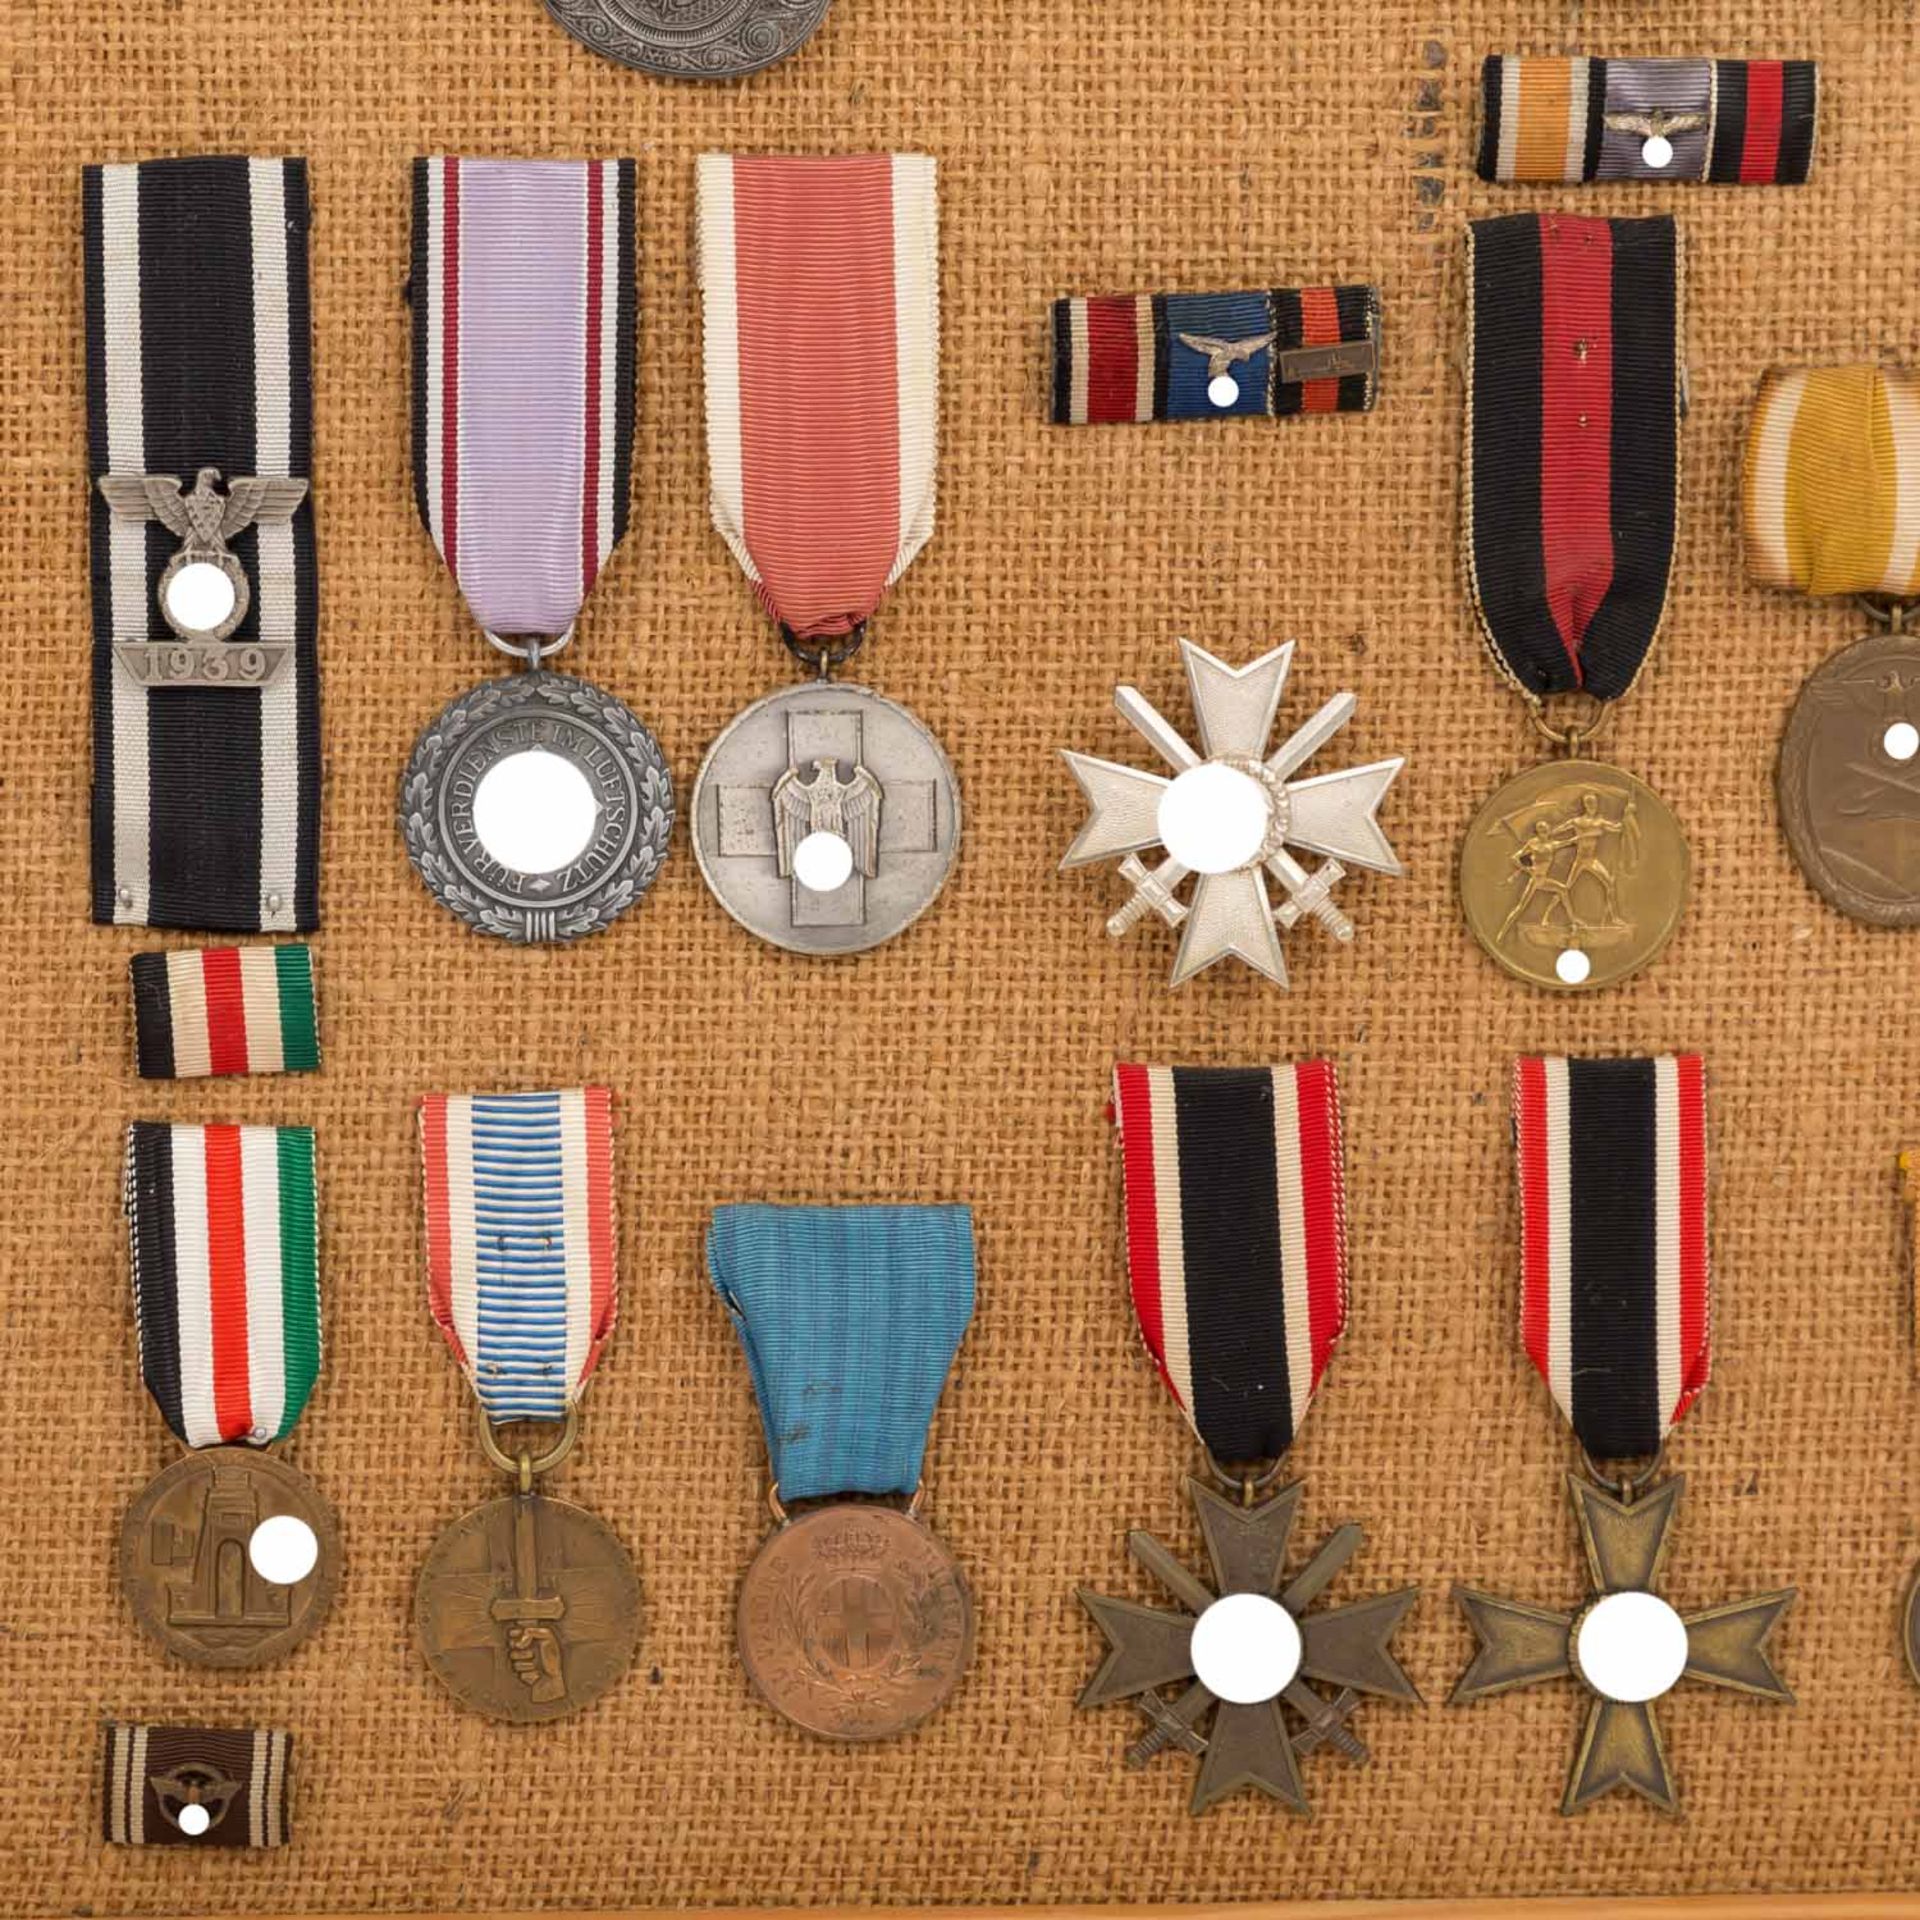 Deutsches Reich 1933-1945 - Orden und Auszeichnungen,Miniaturen, 3 Spangen, Frackschna - Bild 3 aus 5